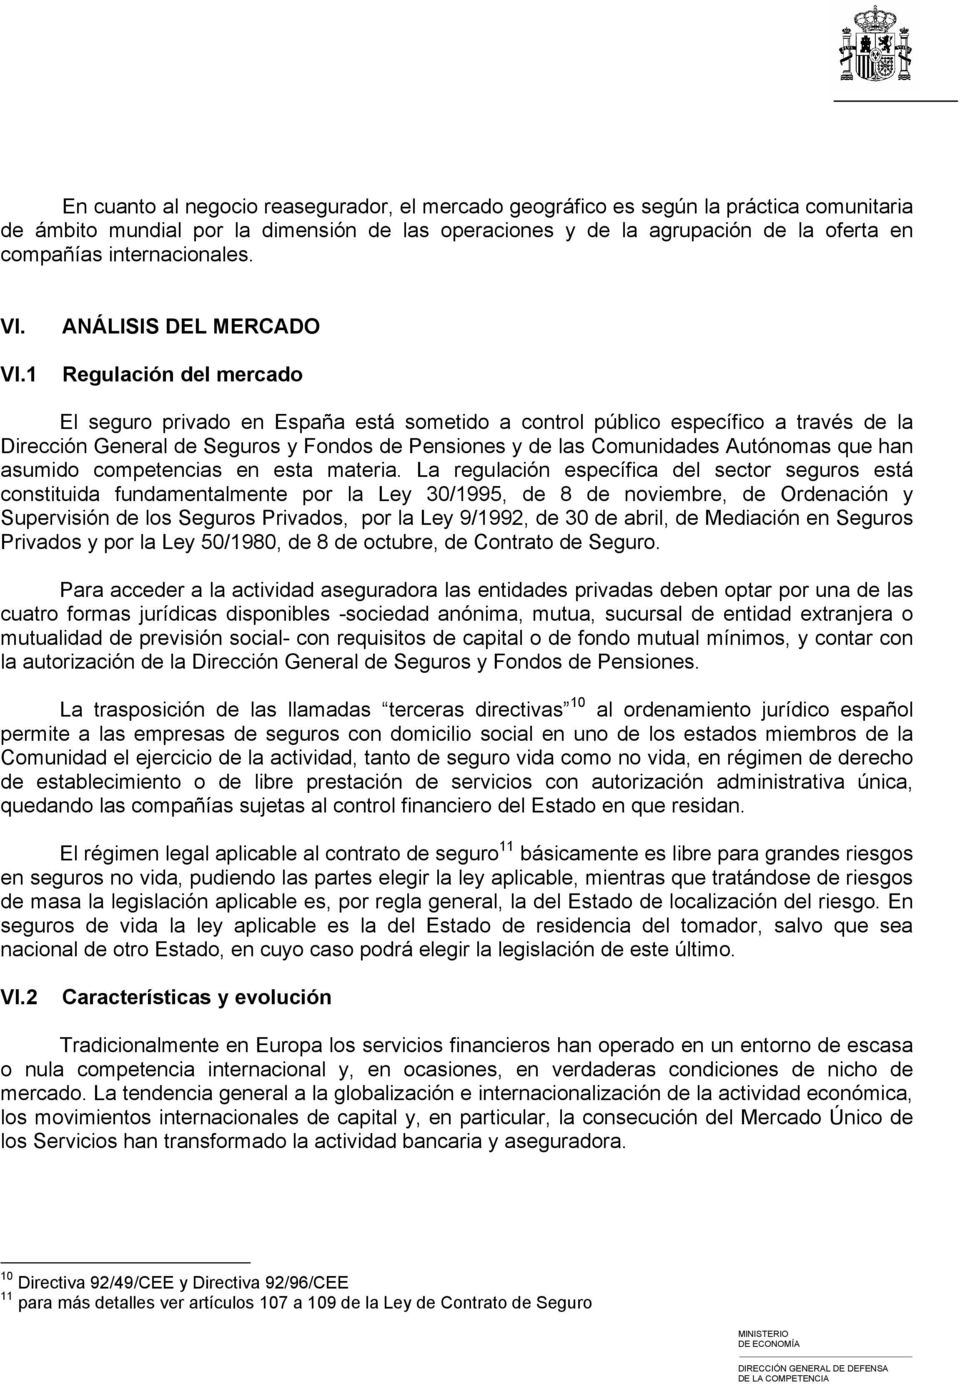 VI.1 ANÁLISIS DEL MERCADO Regulación del mercado El seguro privado en España está sometido a control público específico a través de la Dirección General de Seguros y Fondos de Pensiones y de las